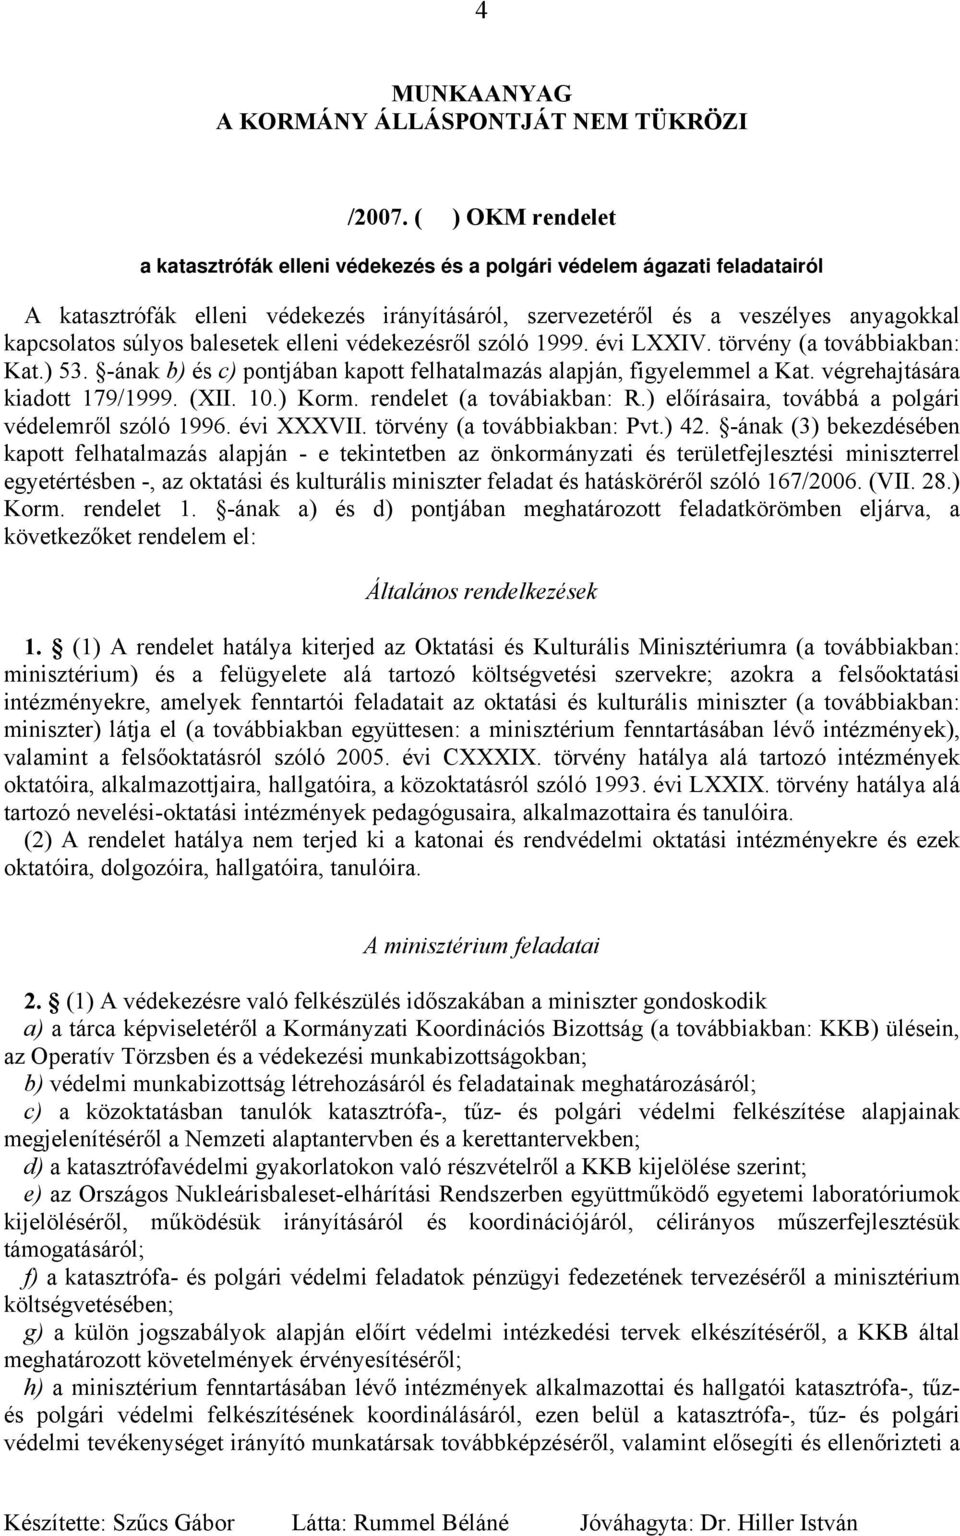 balesetek elleni védekezésről szóló 1999. évi LXXIV. törvény (a továbbiakban: Kat.) 53. -ának b) és c) pontjában kapott felhatalmazás alapján, figyelemmel a Kat. végrehajtására kiadott 179/1999. (XII.